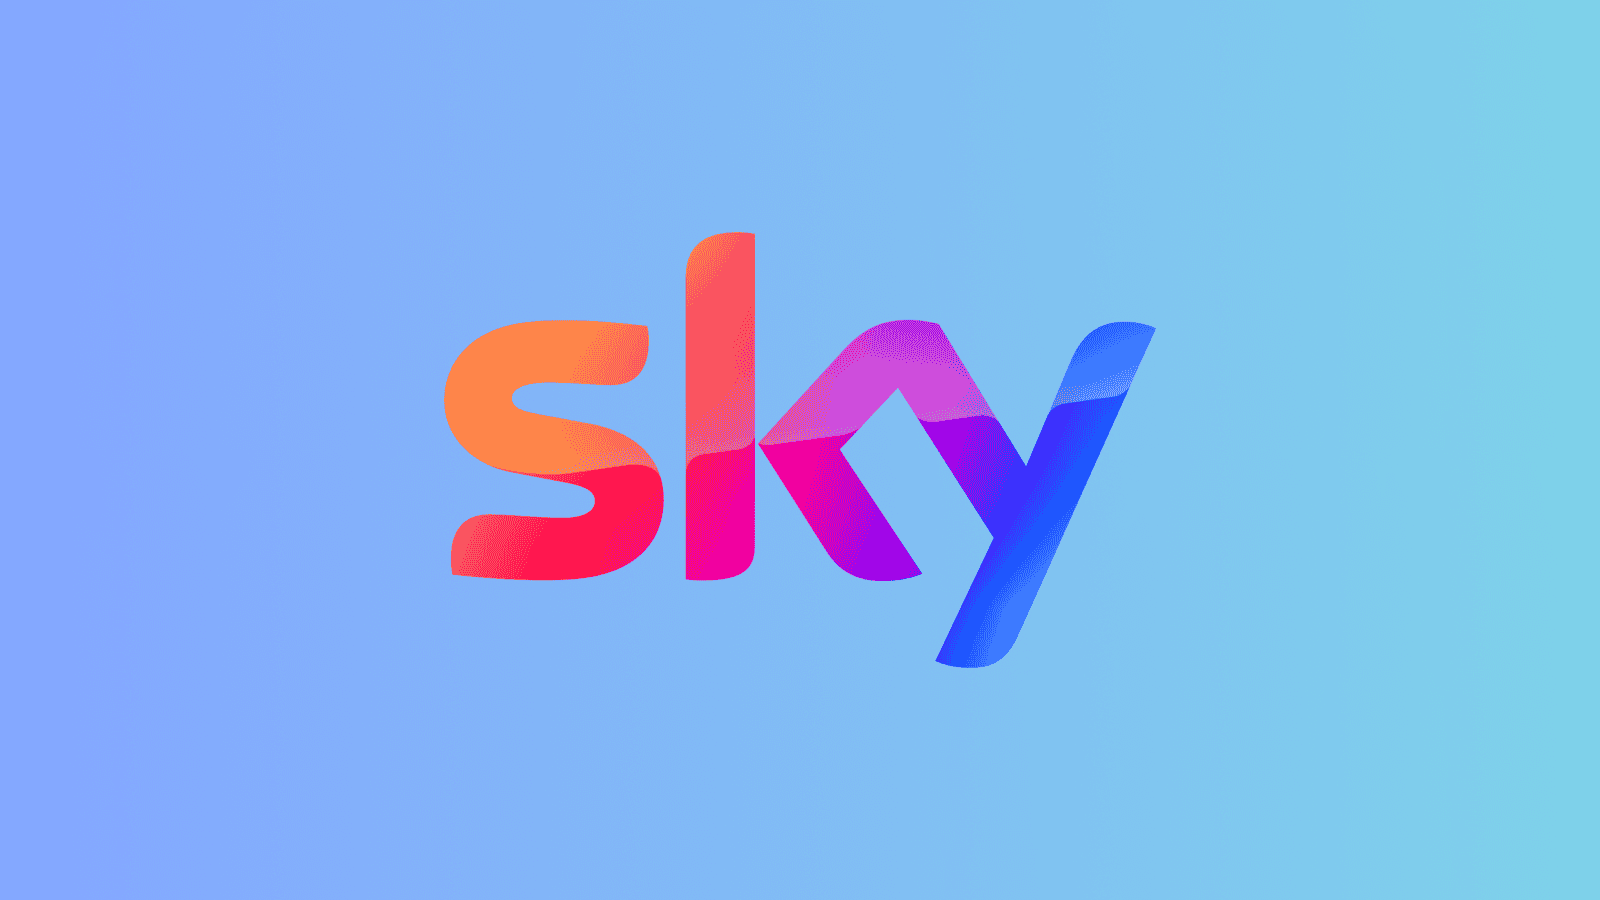 Uswitch sky logo